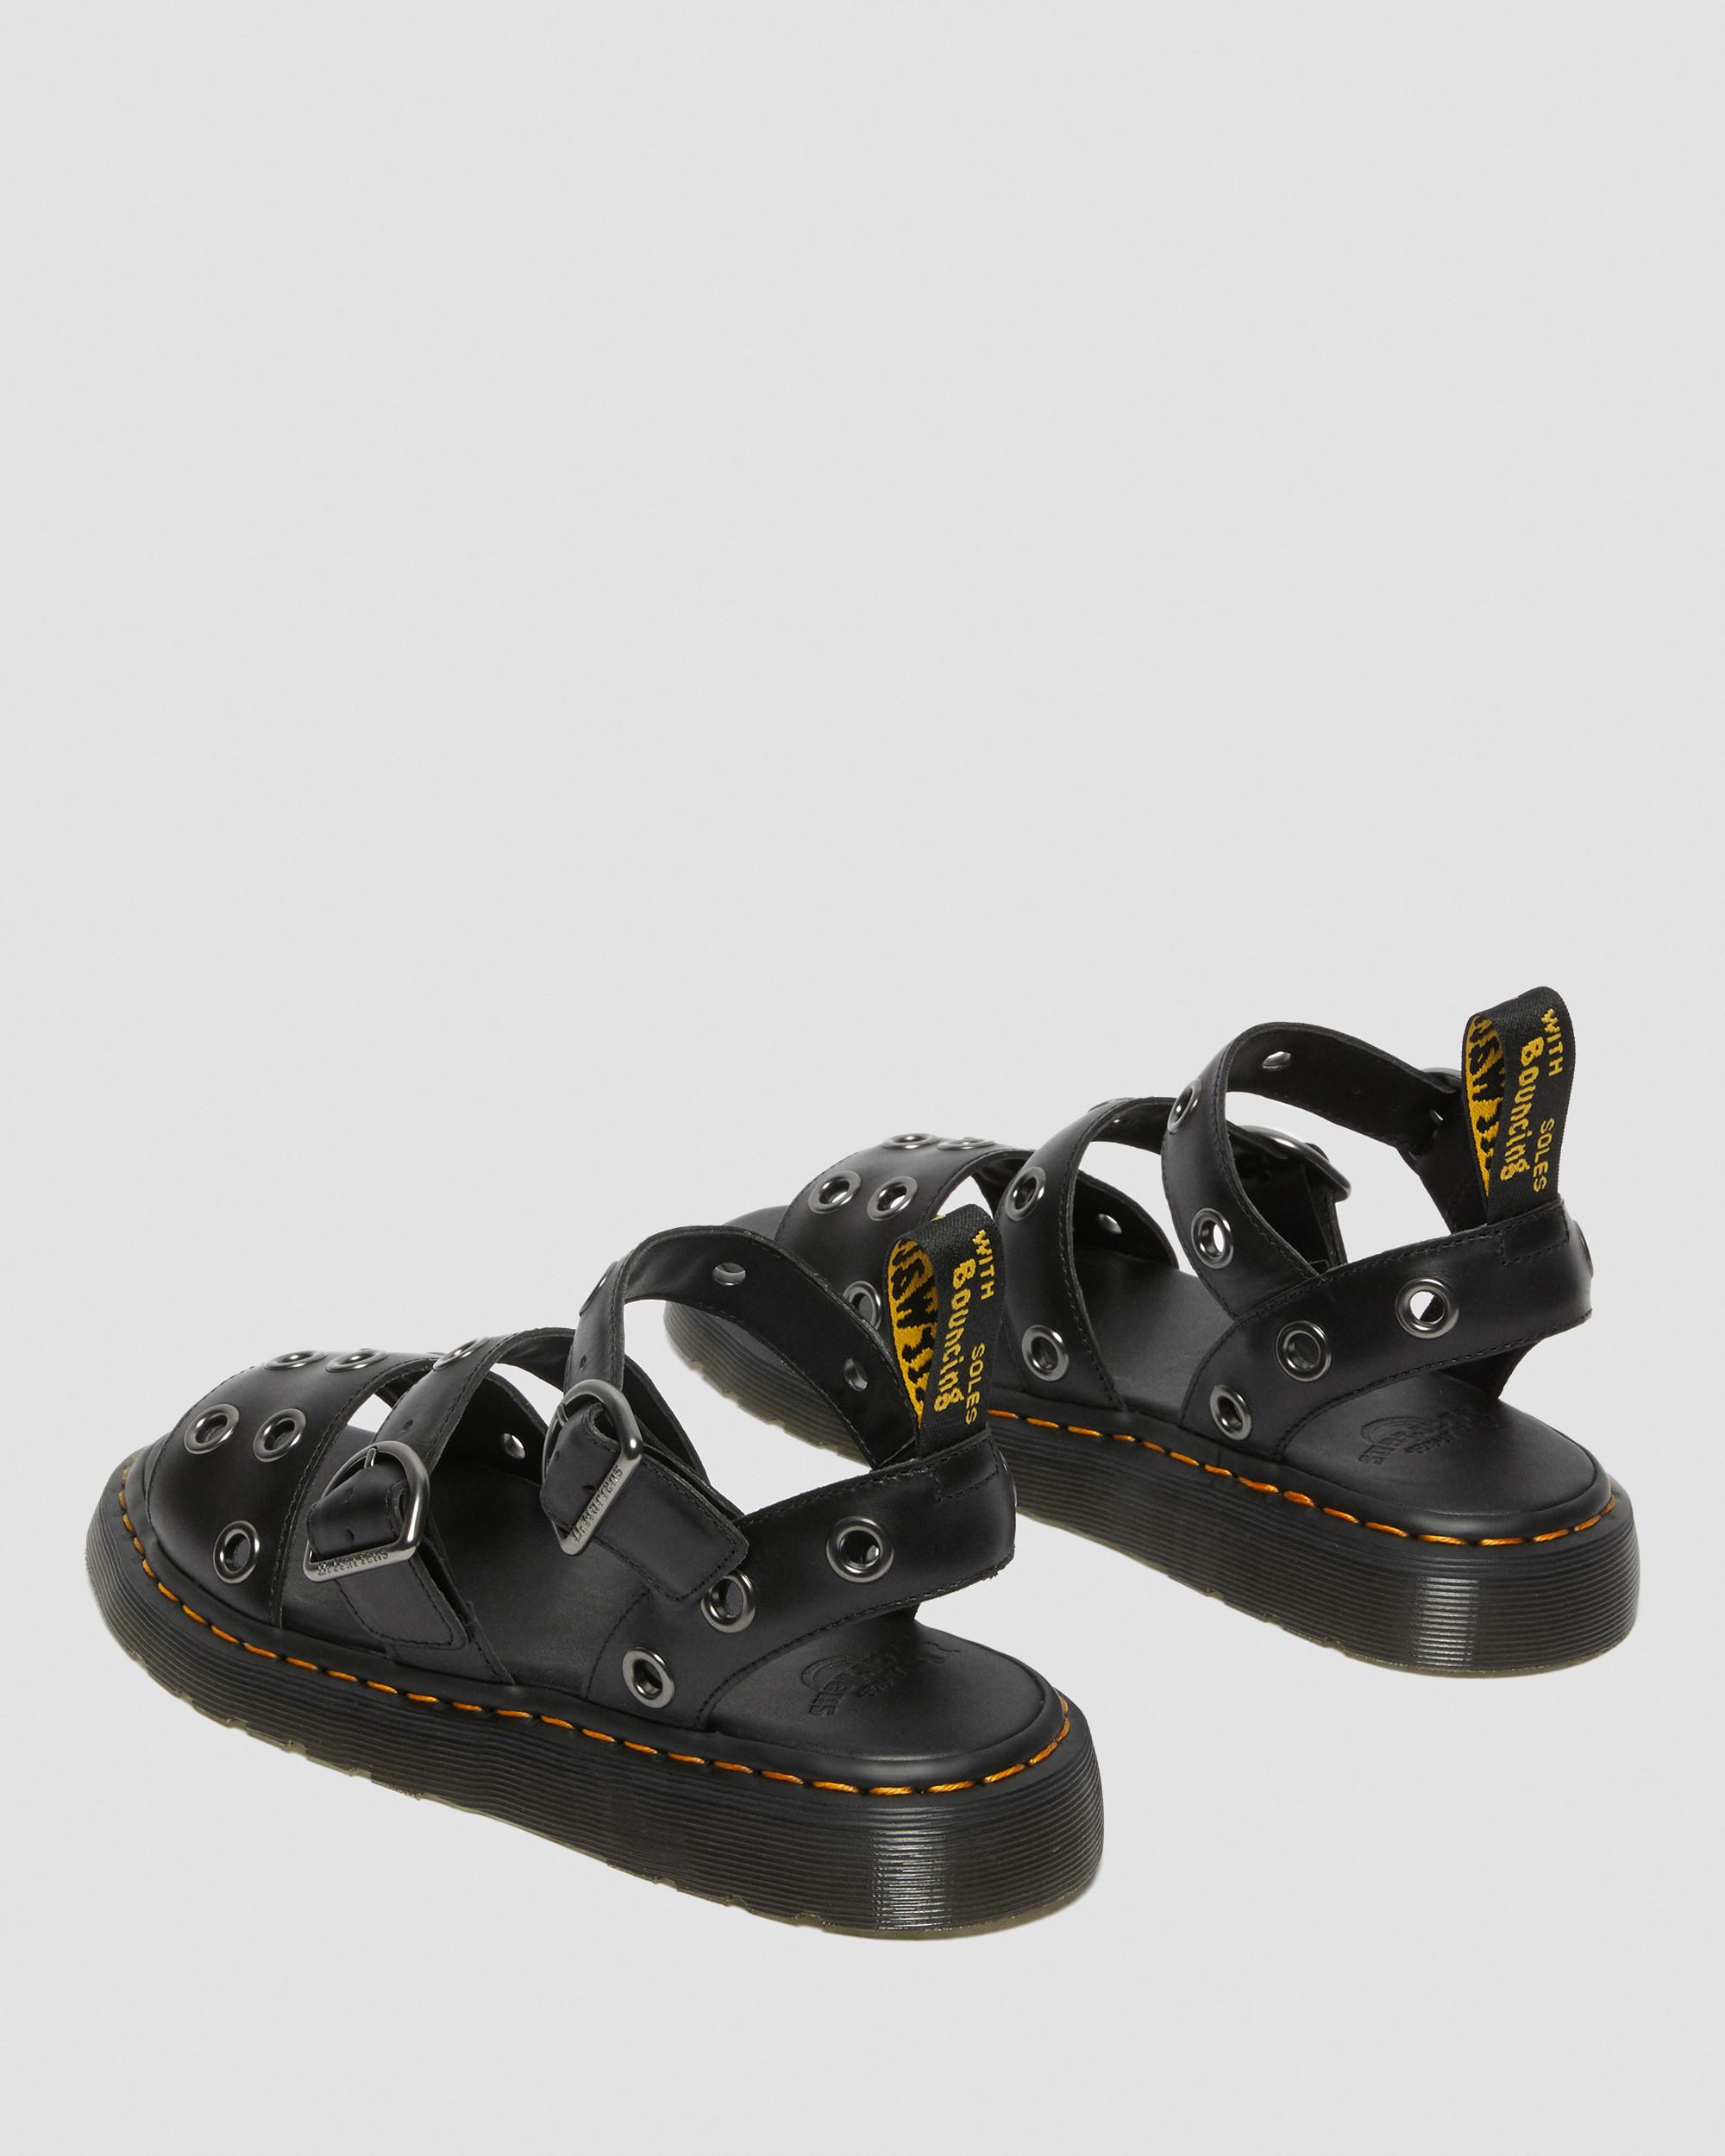 Gryphon Hardware Brando Leather Sandals in Black | Dr. Martens